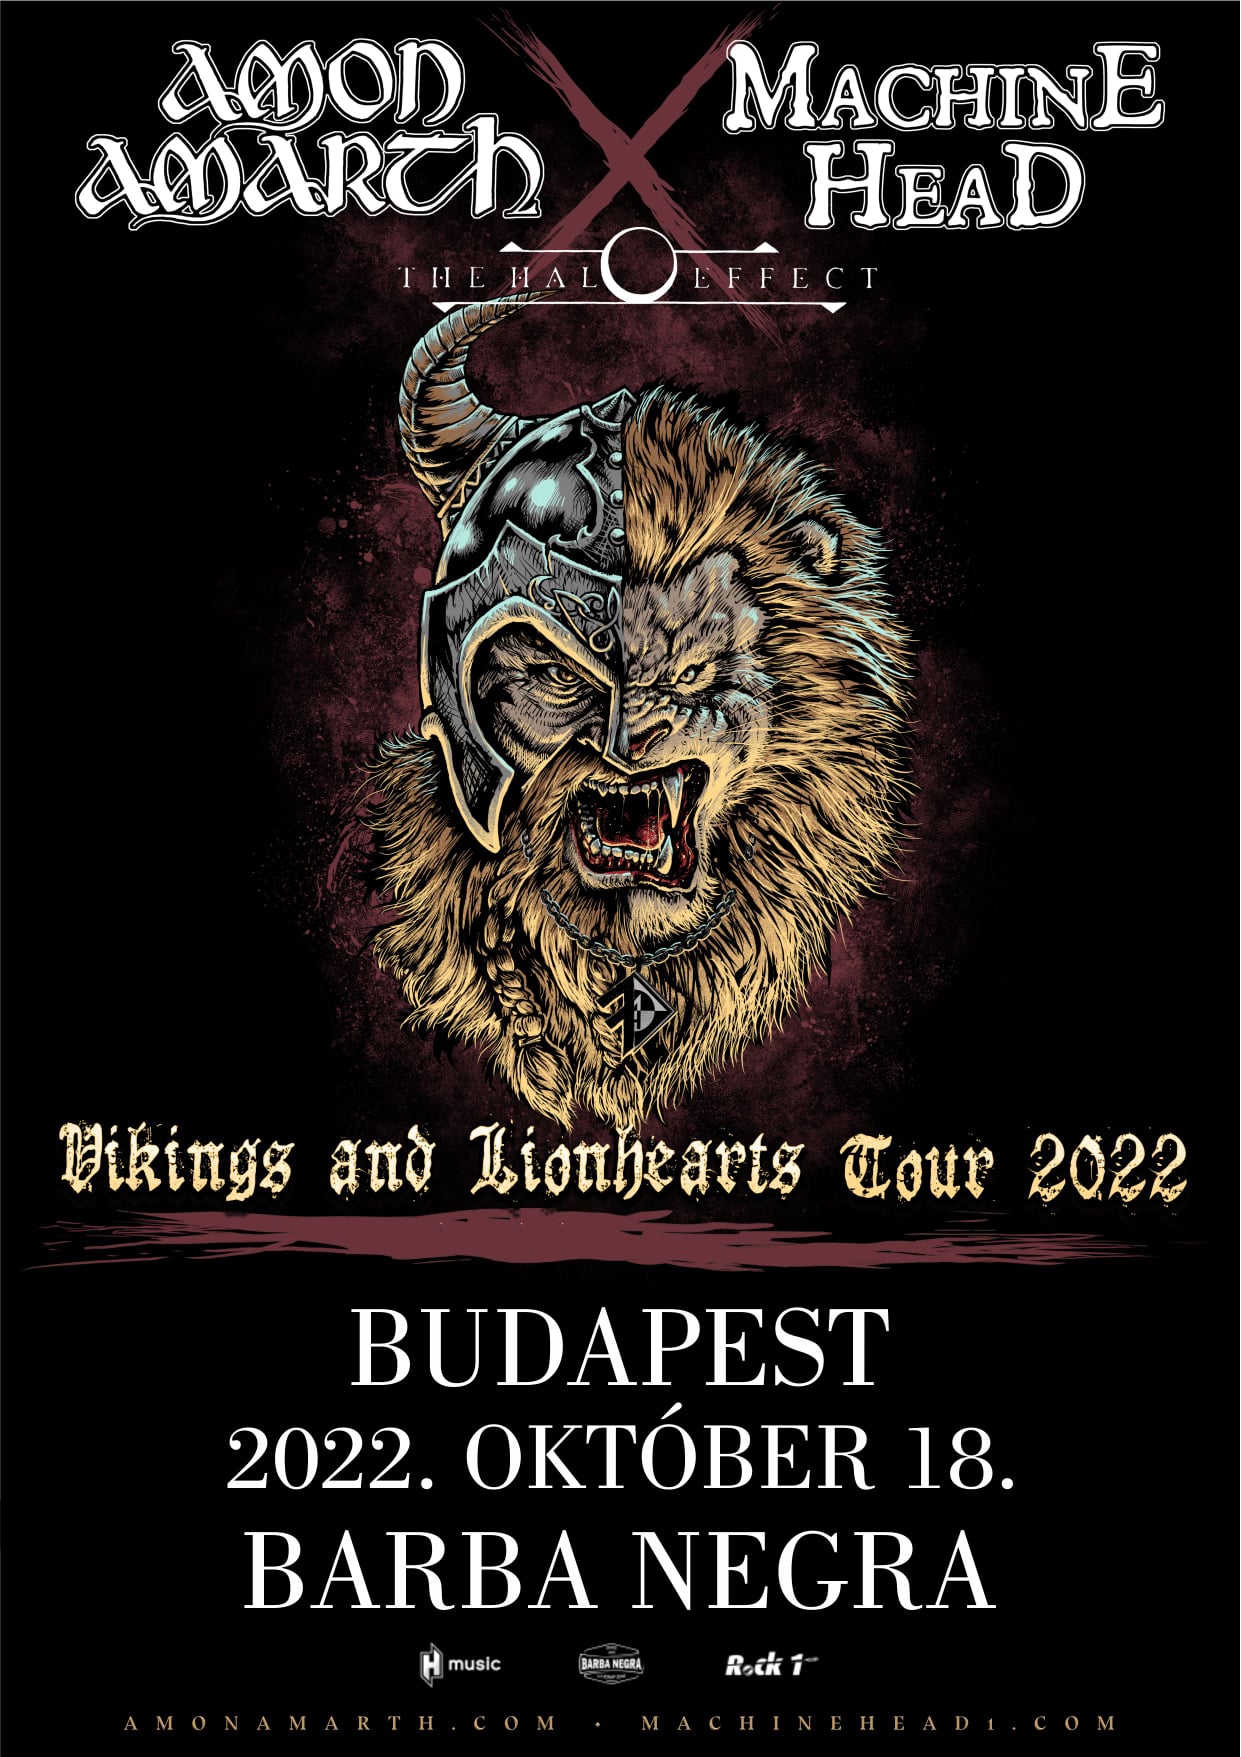 Vikings & Lionhearts Tour 2022